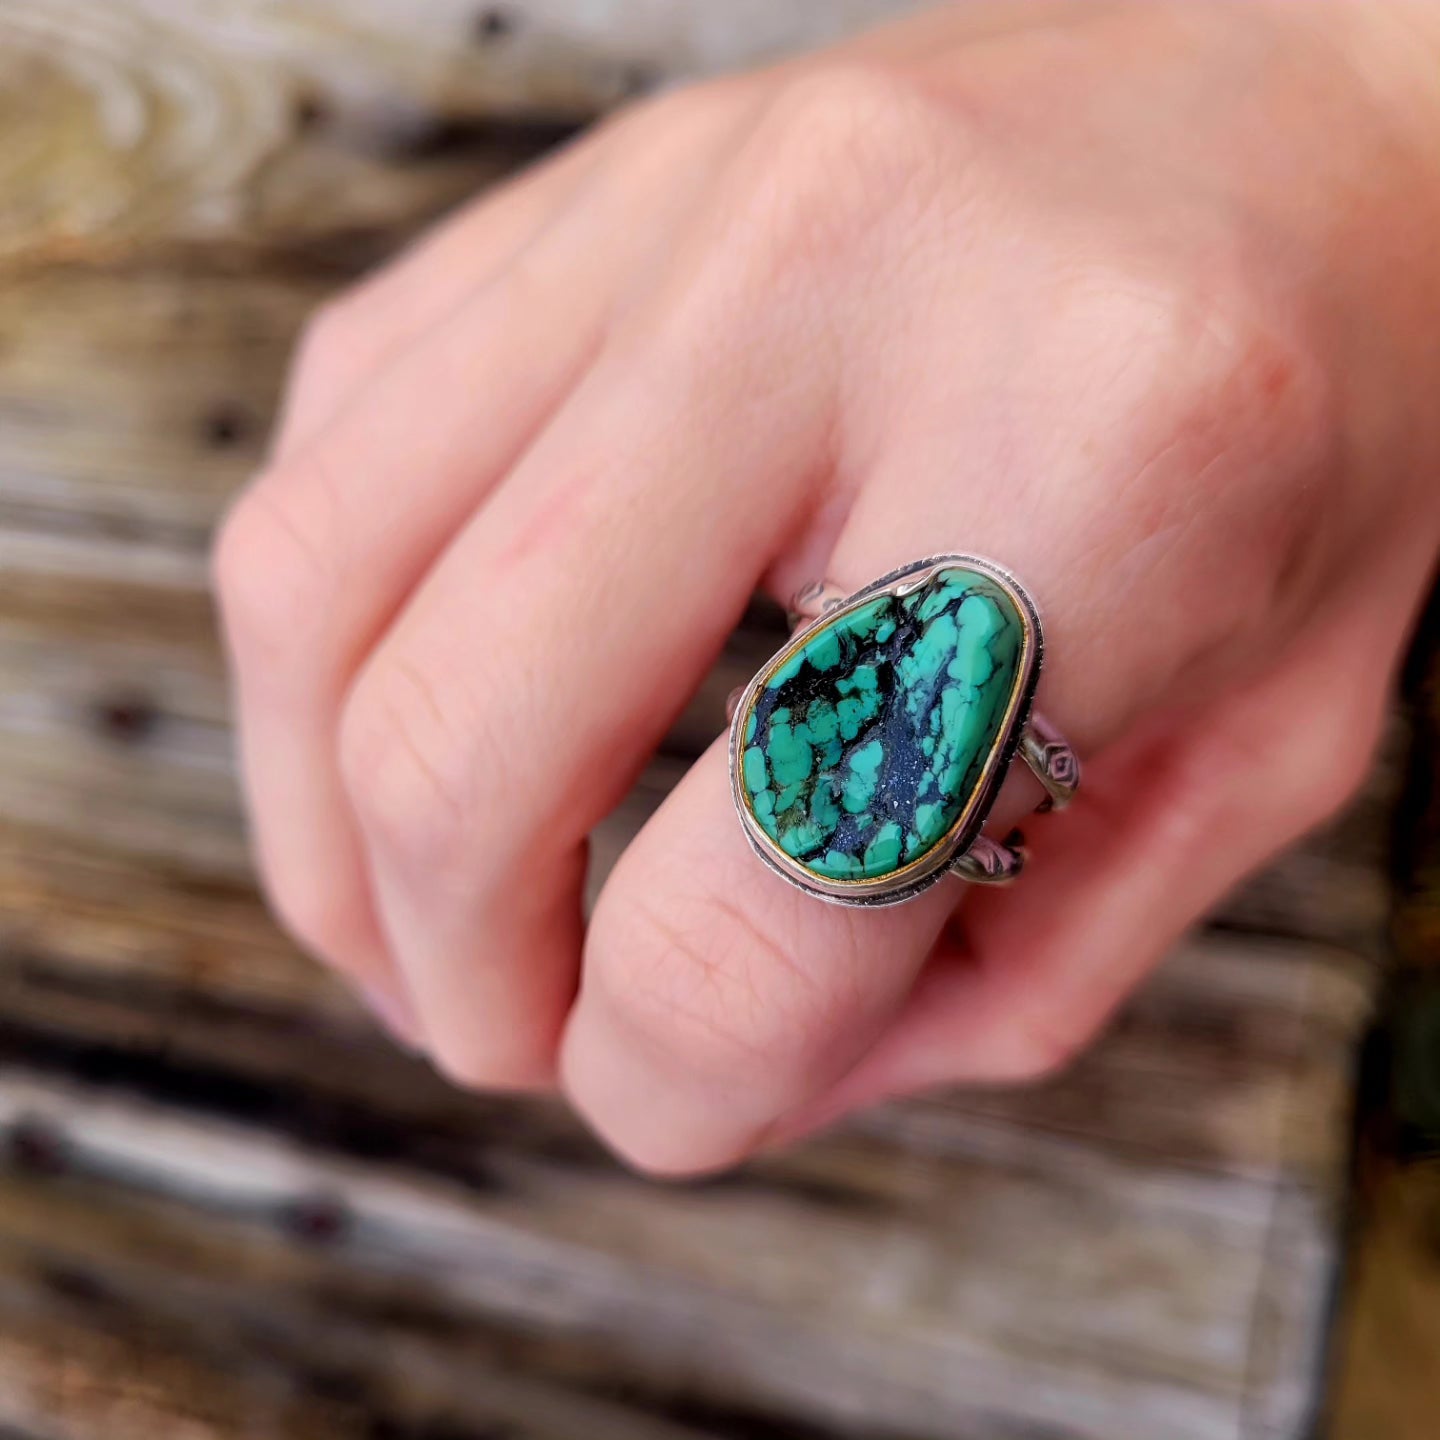 Kingman turquoise nugget ring size 8